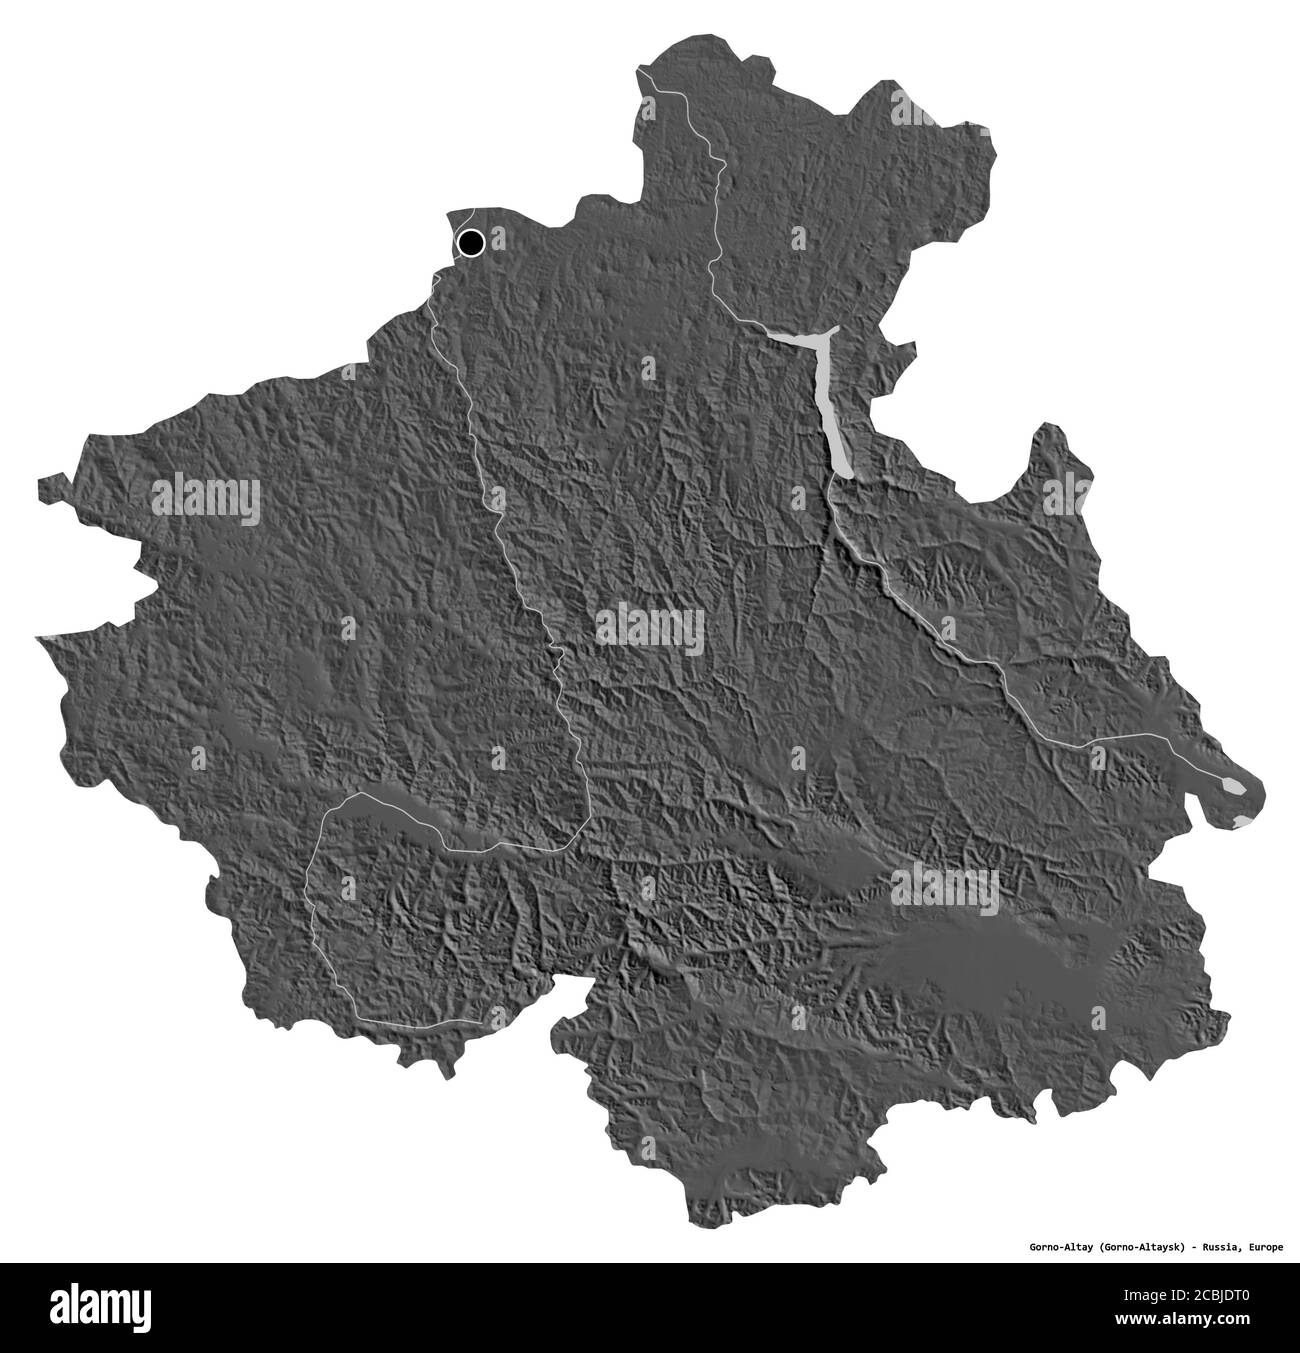 Forme de Gorno-Altay, république de Russie, avec sa capitale isolée sur fond blanc. Carte d'élévation à deux niveaux. Rendu 3D Banque D'Images